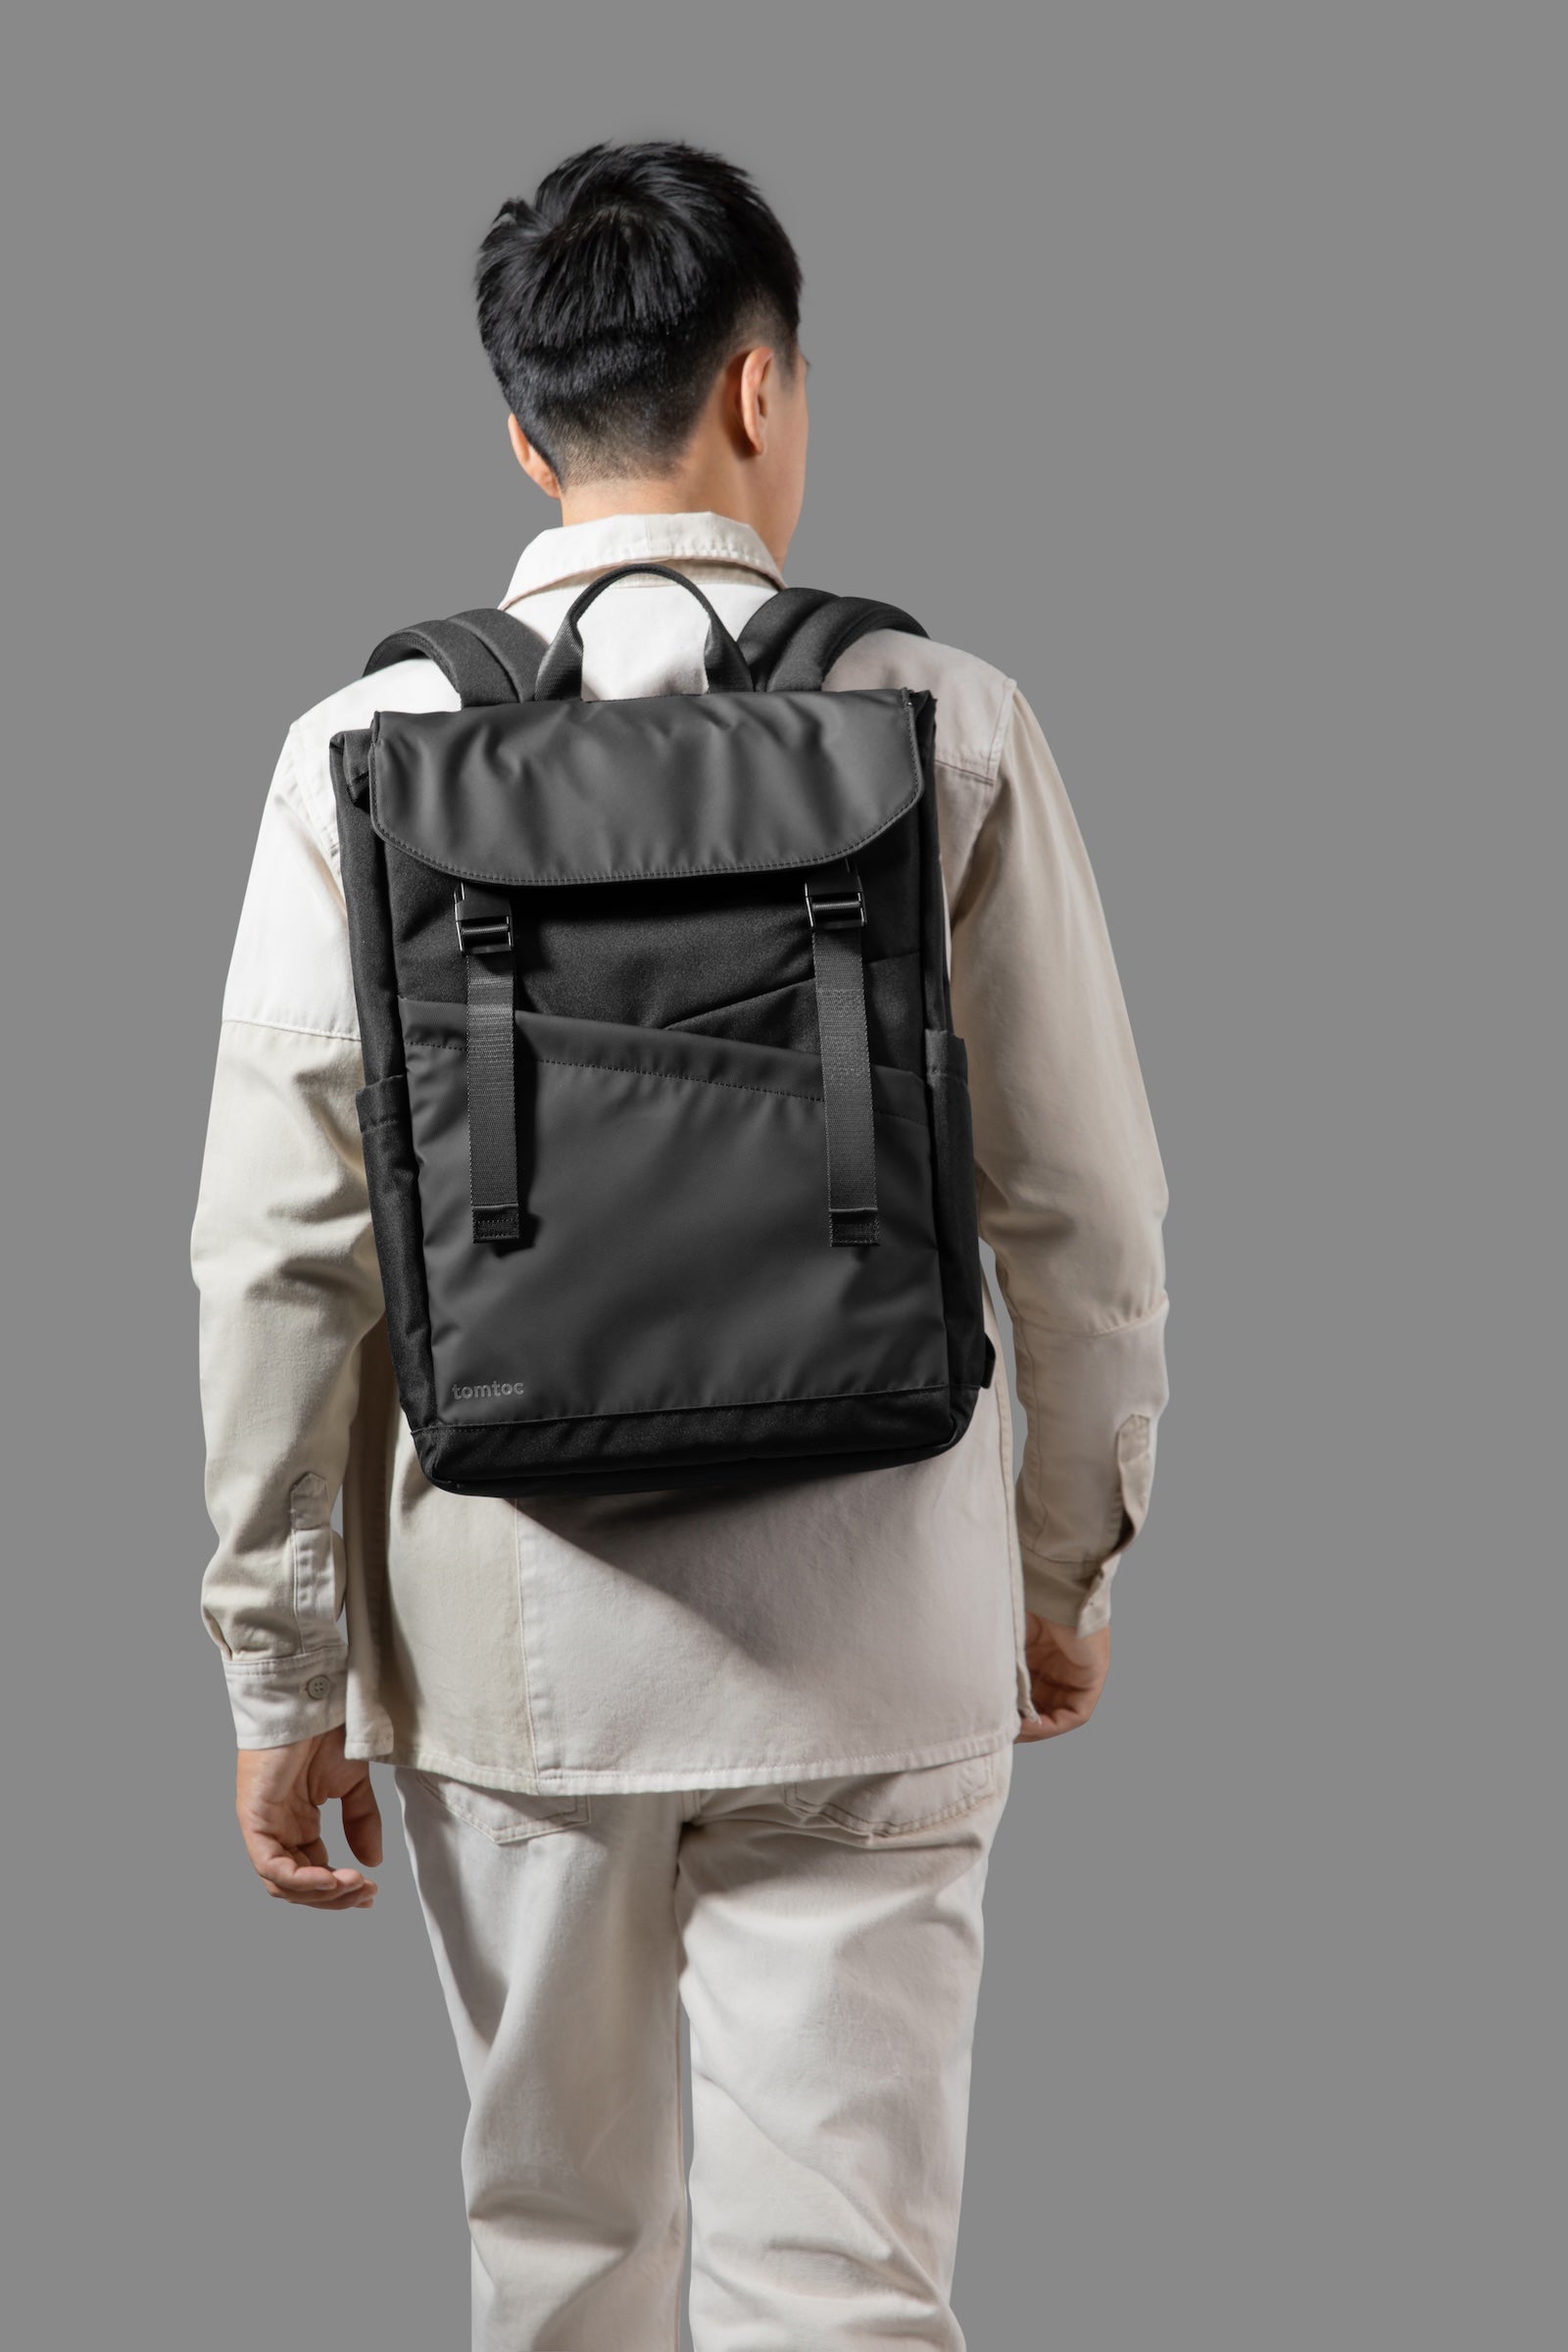 tomtoc Slash-T64 Laptop Backpack